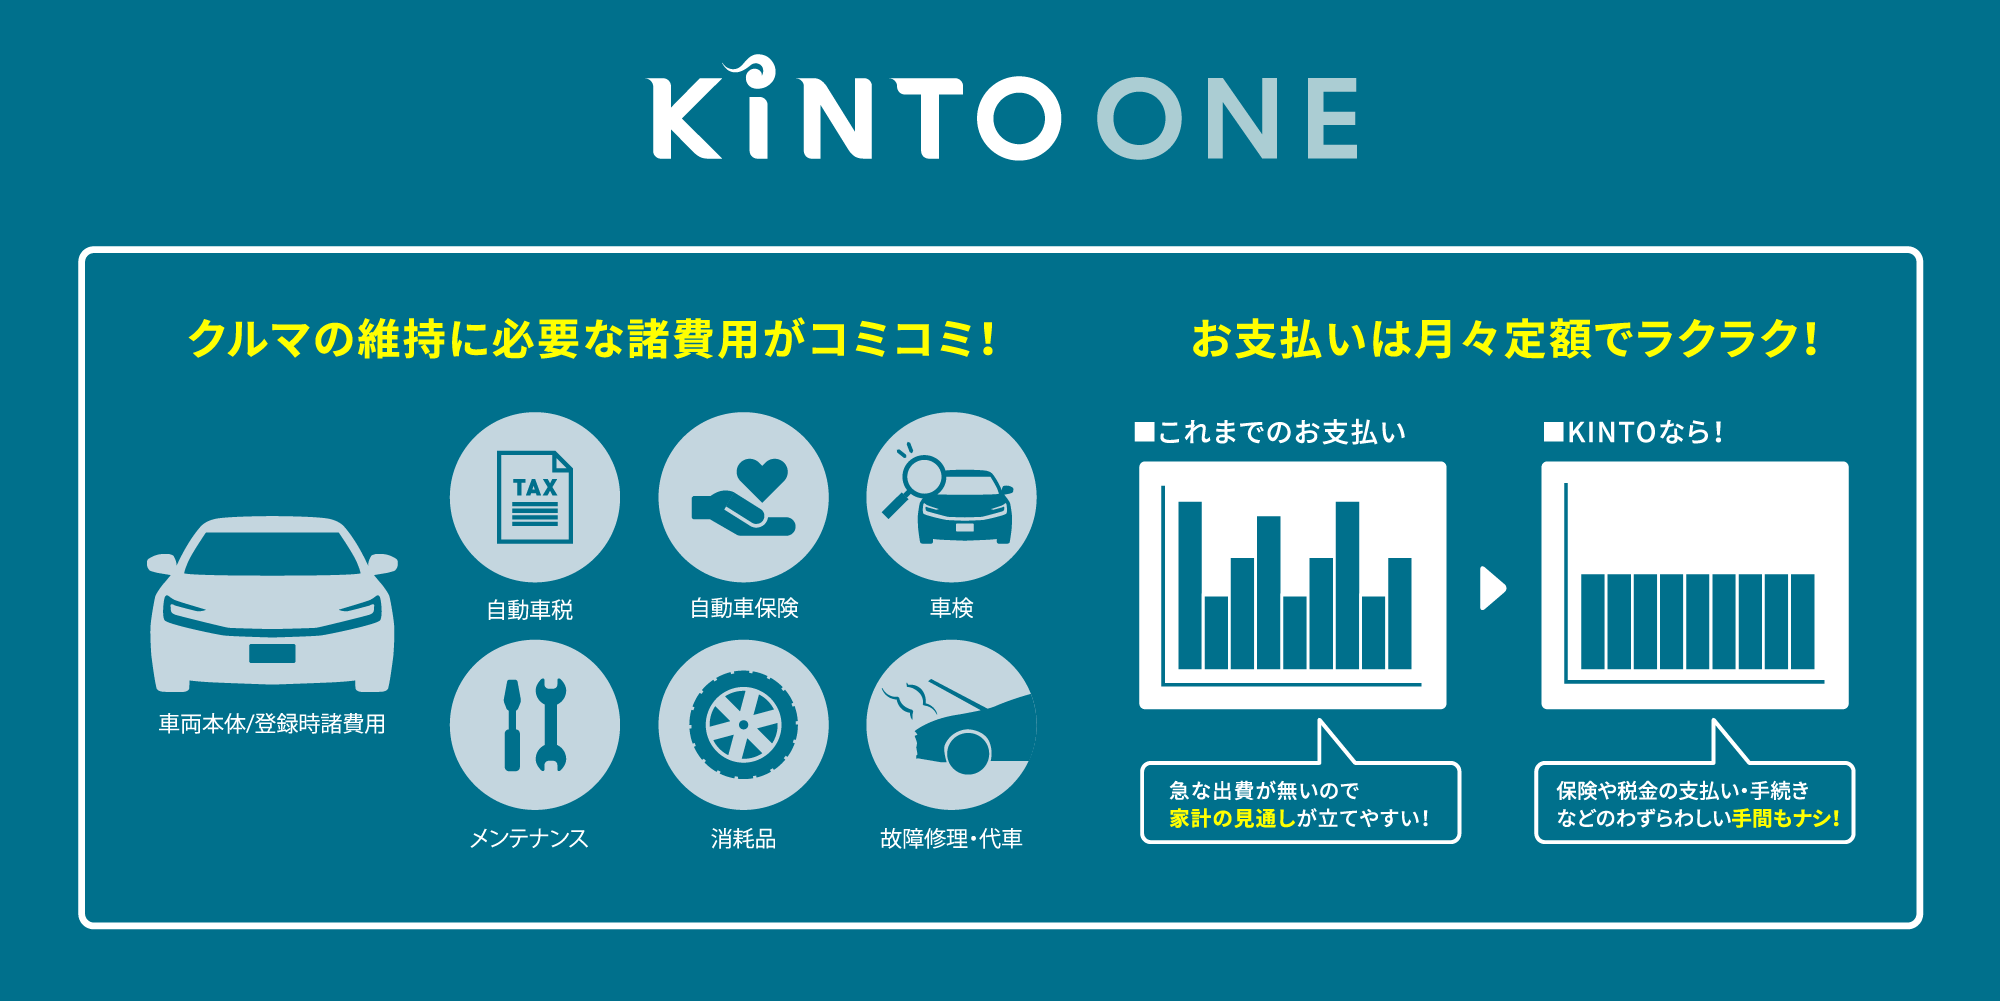 KiNTO ONE